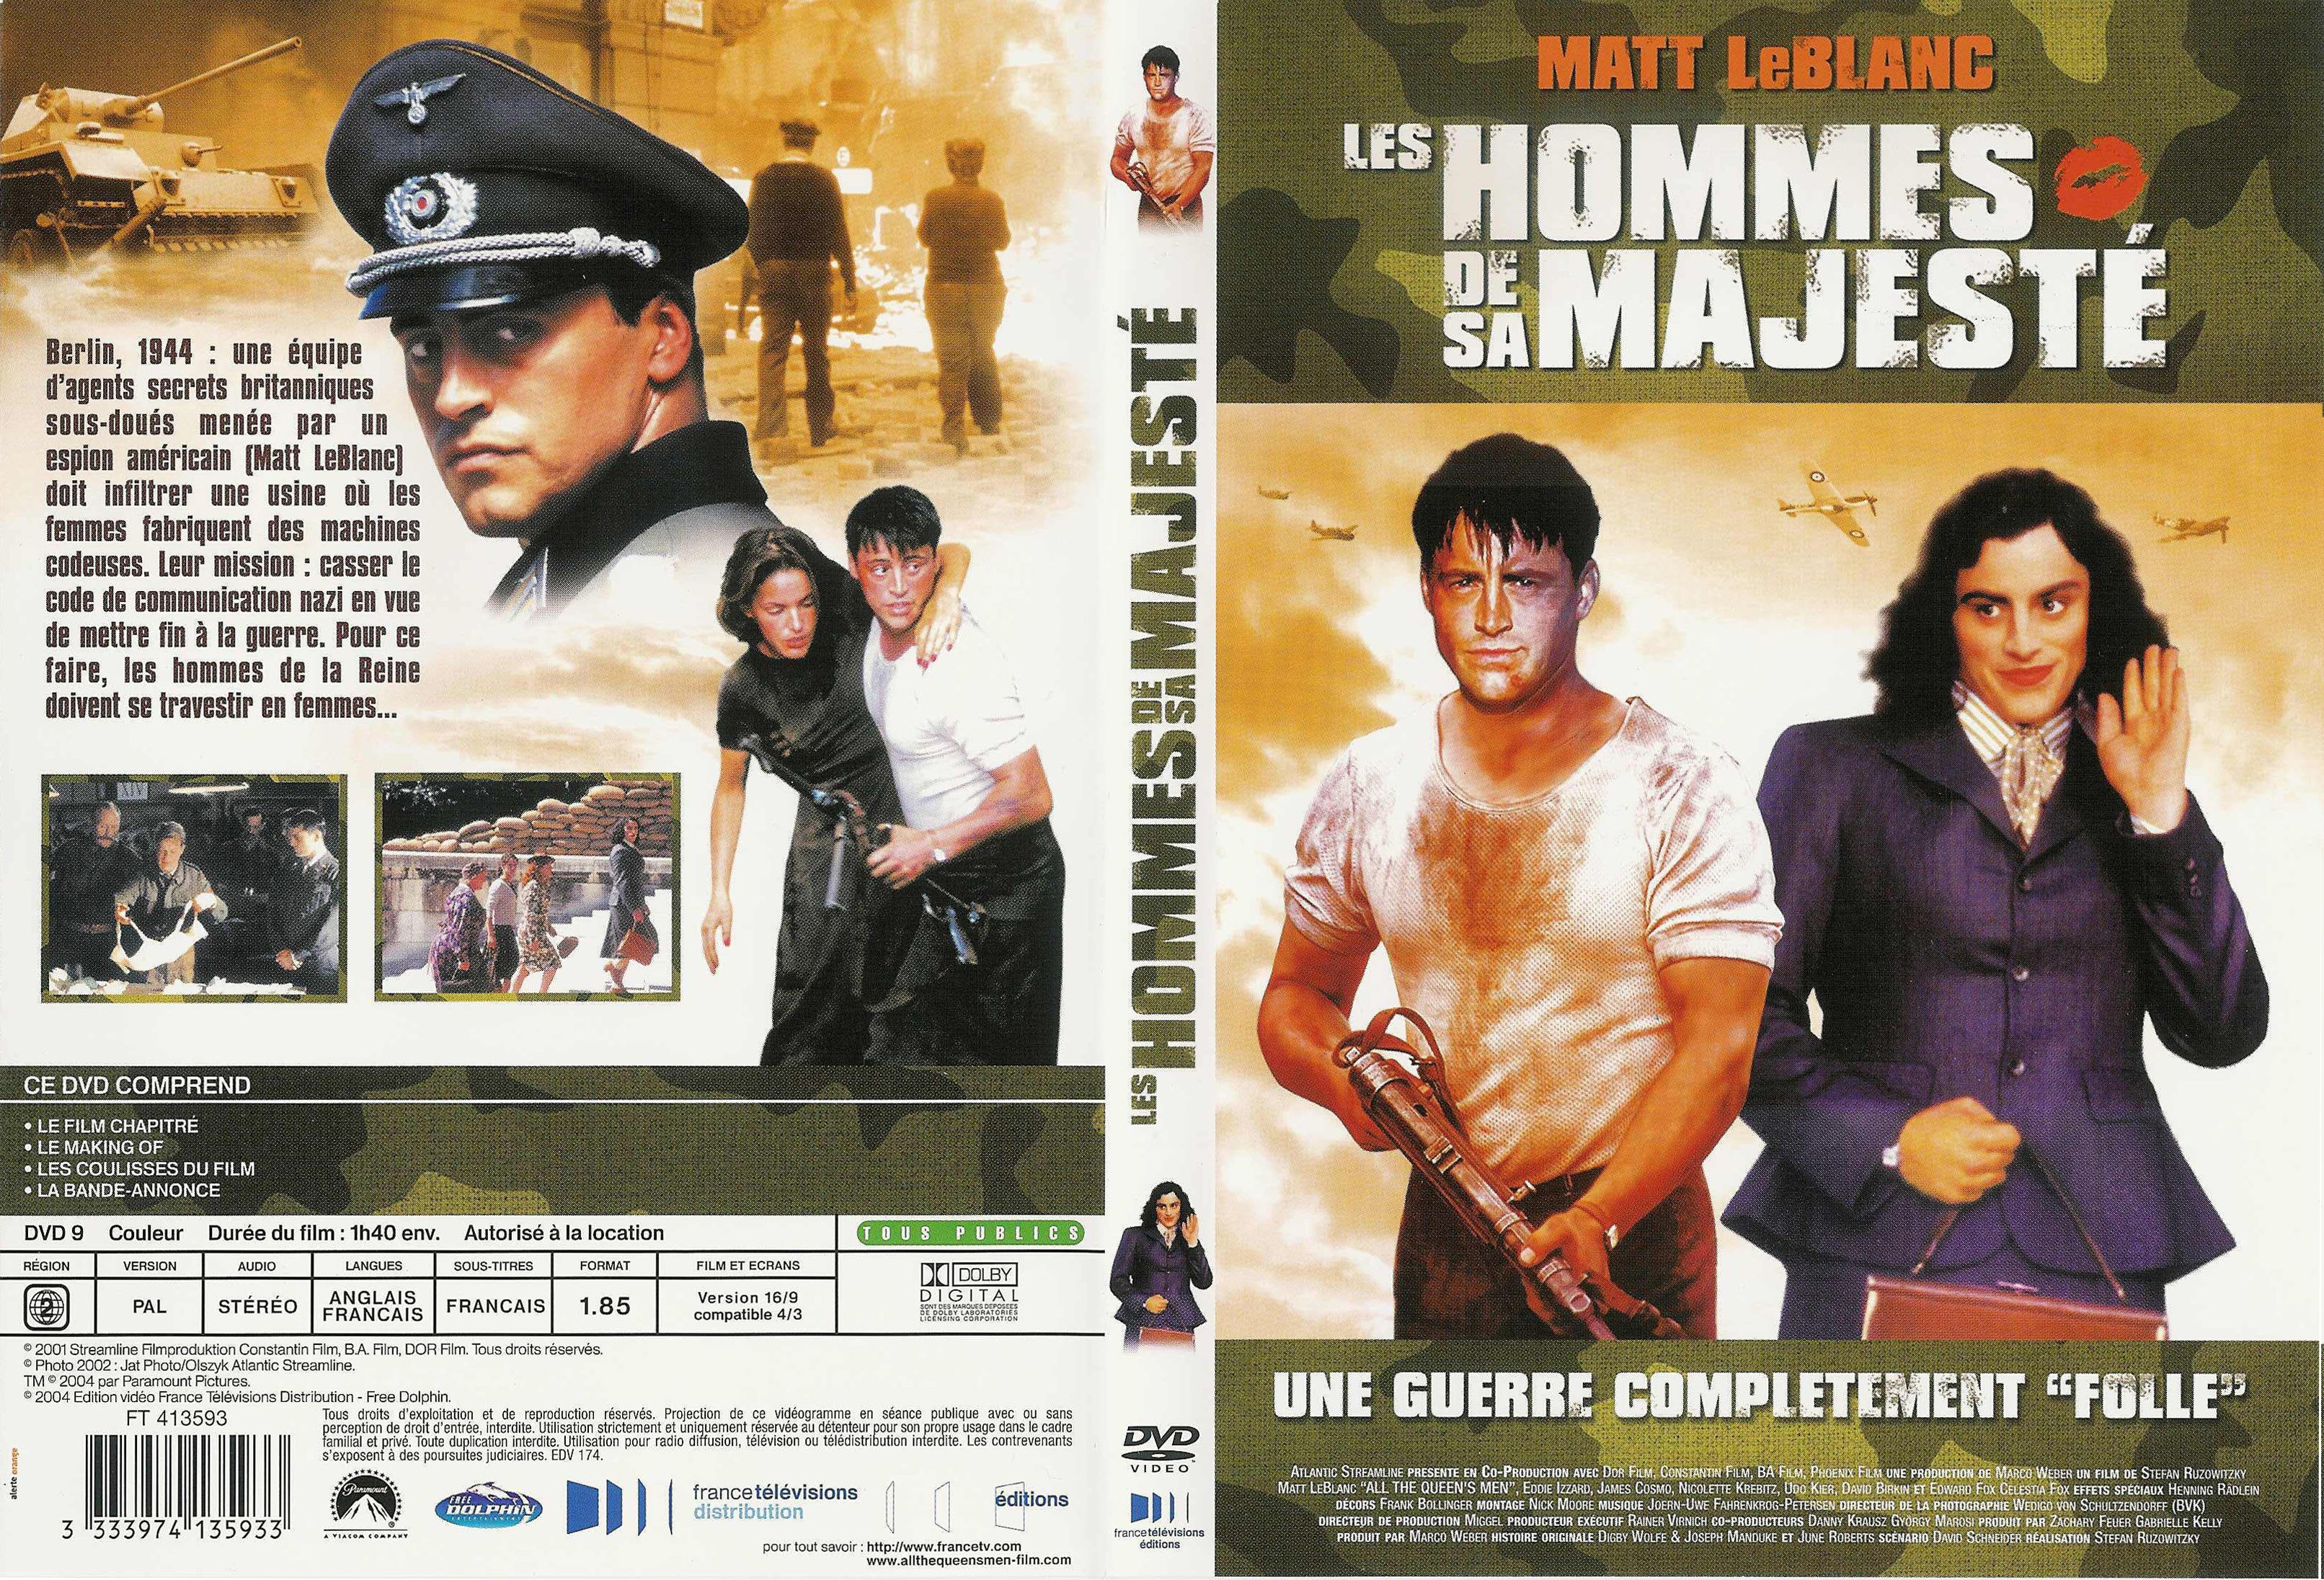 Jaquette DVD Les hommes de sa majest